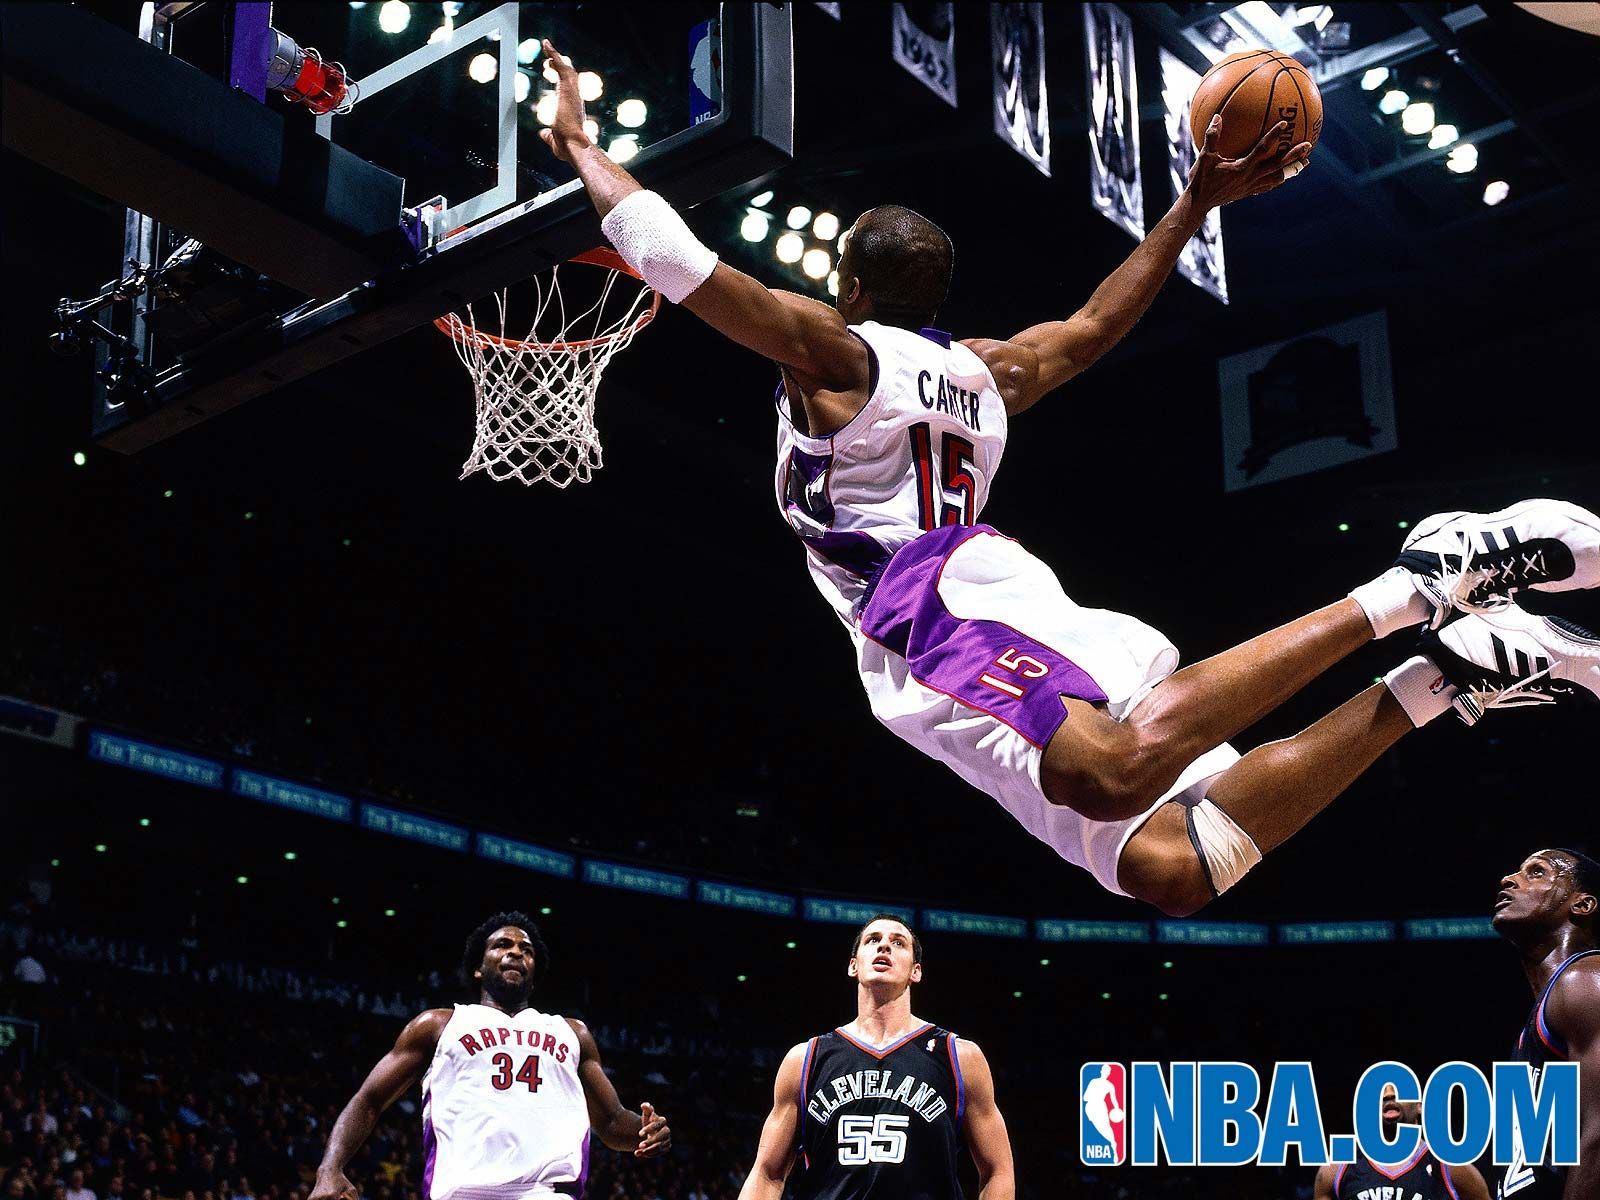 Basketball Dunks - Vince Carter , HD Wallpaper & Backgrounds